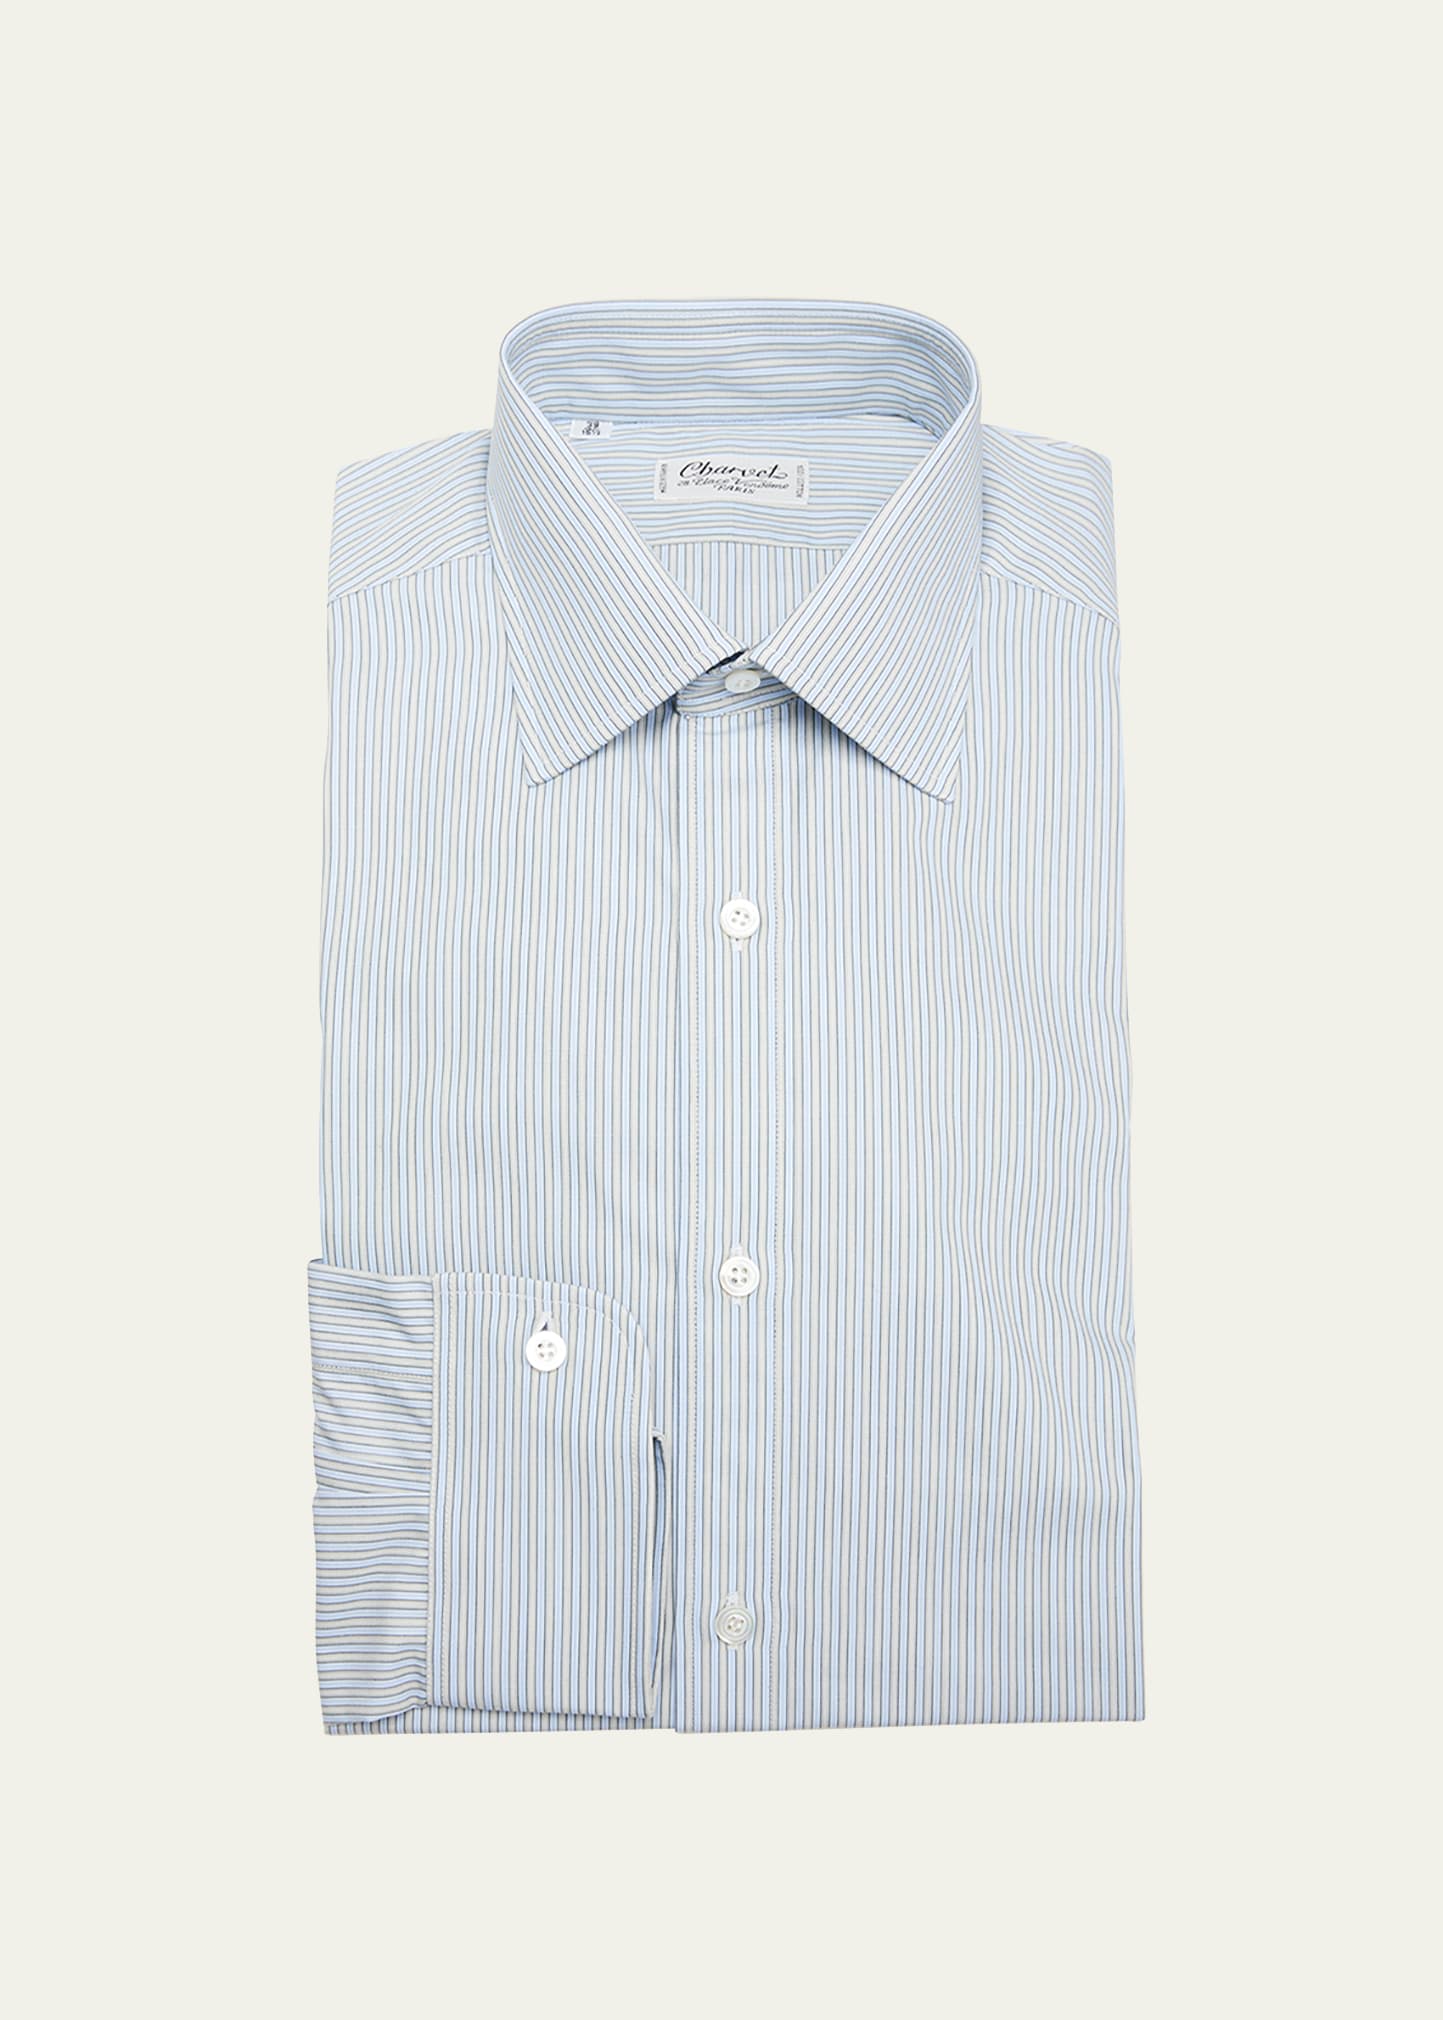 Men's Stripe Cotton Dress Shirt